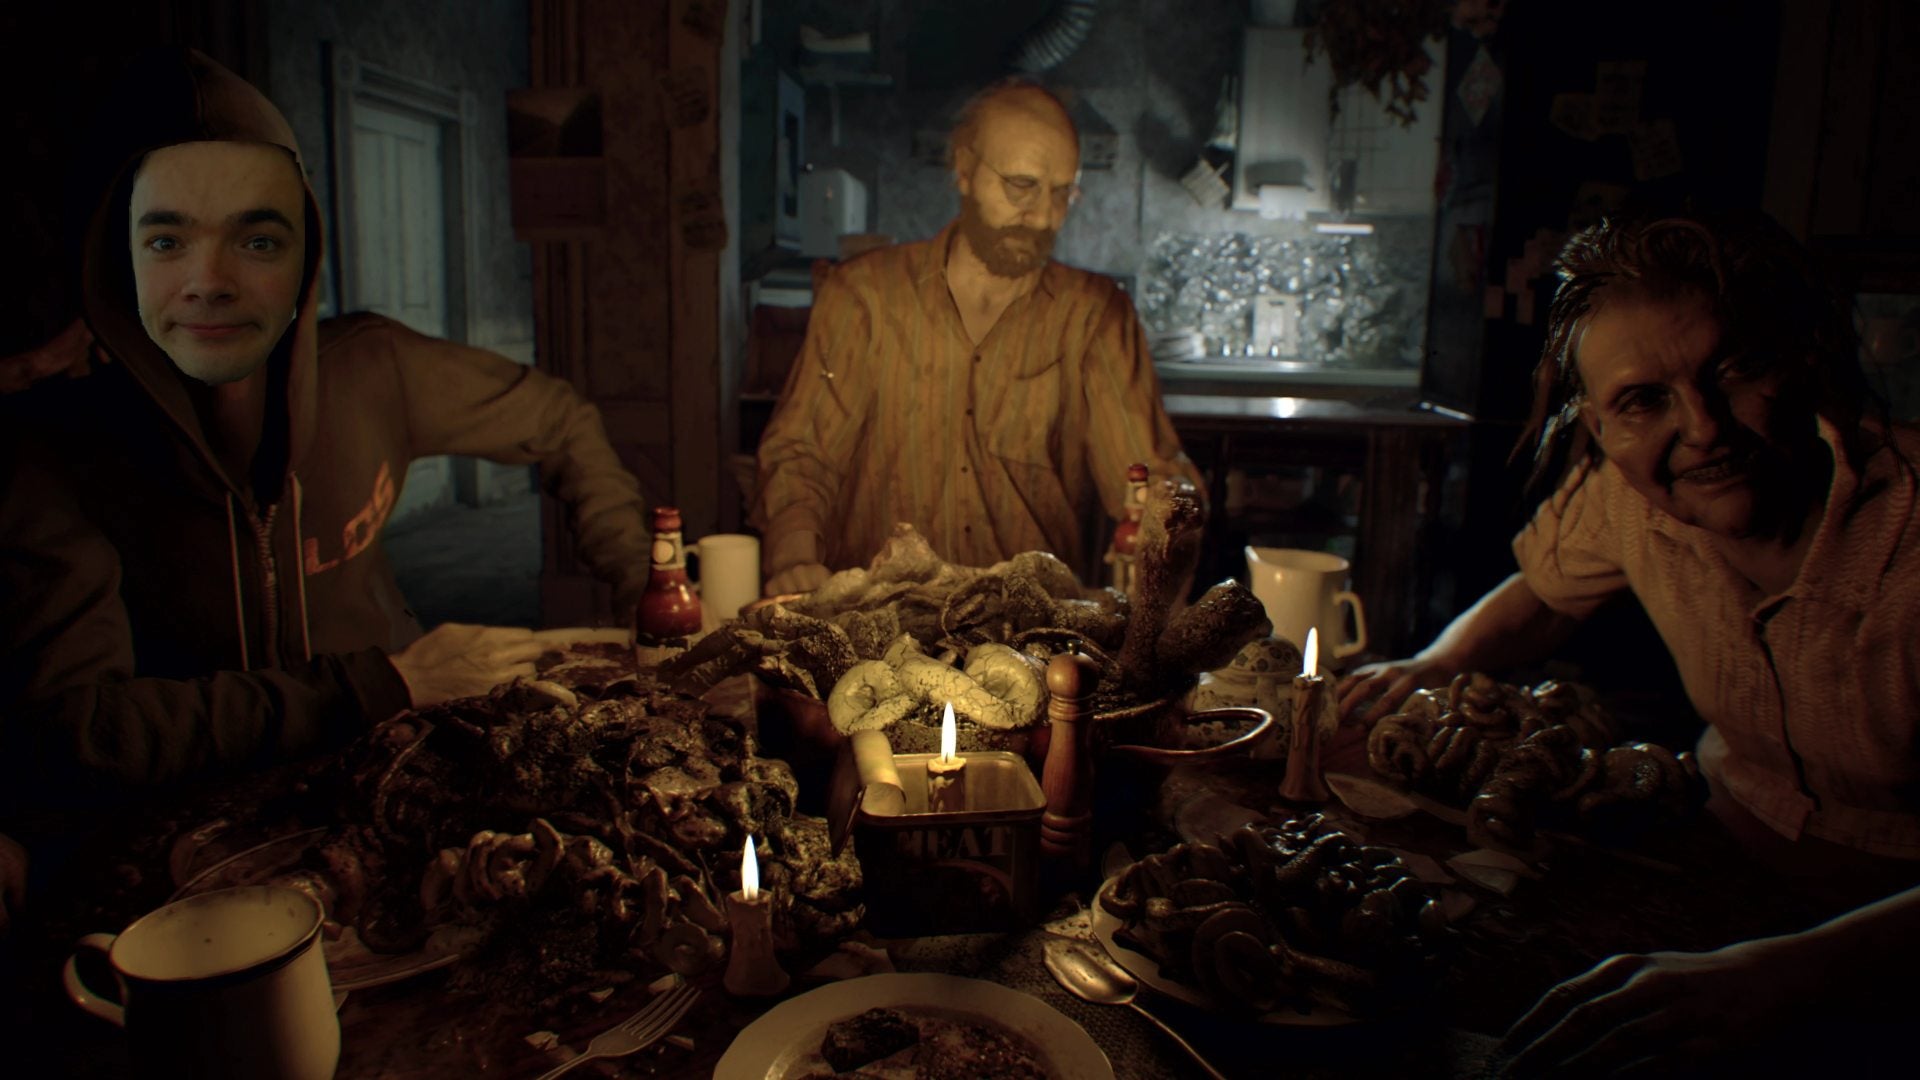 Chris Bratt in Resident Evil 7 at the dinner table